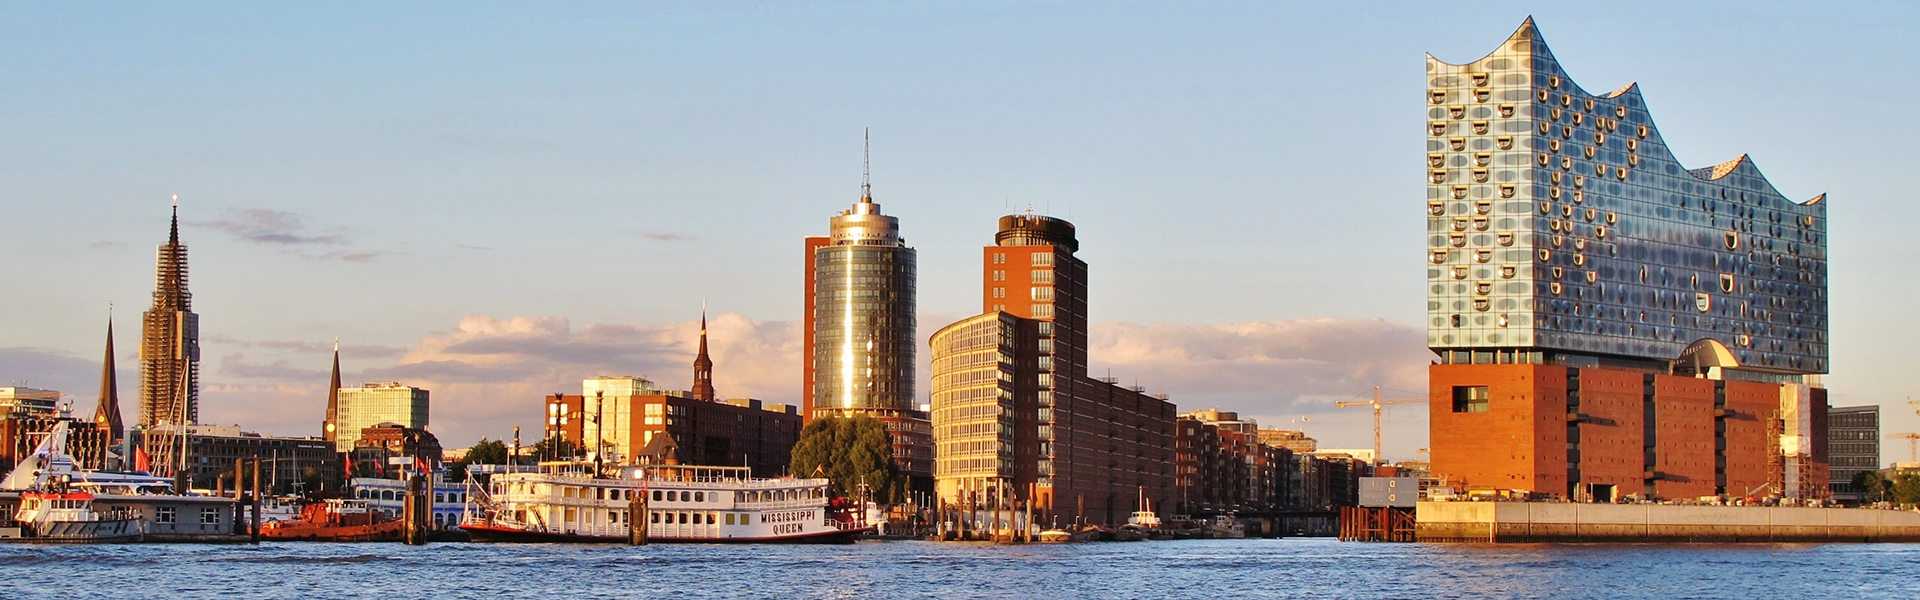 Hamburg soll is 2045 klimaneutral mit Wärme und Energie versorgt werden